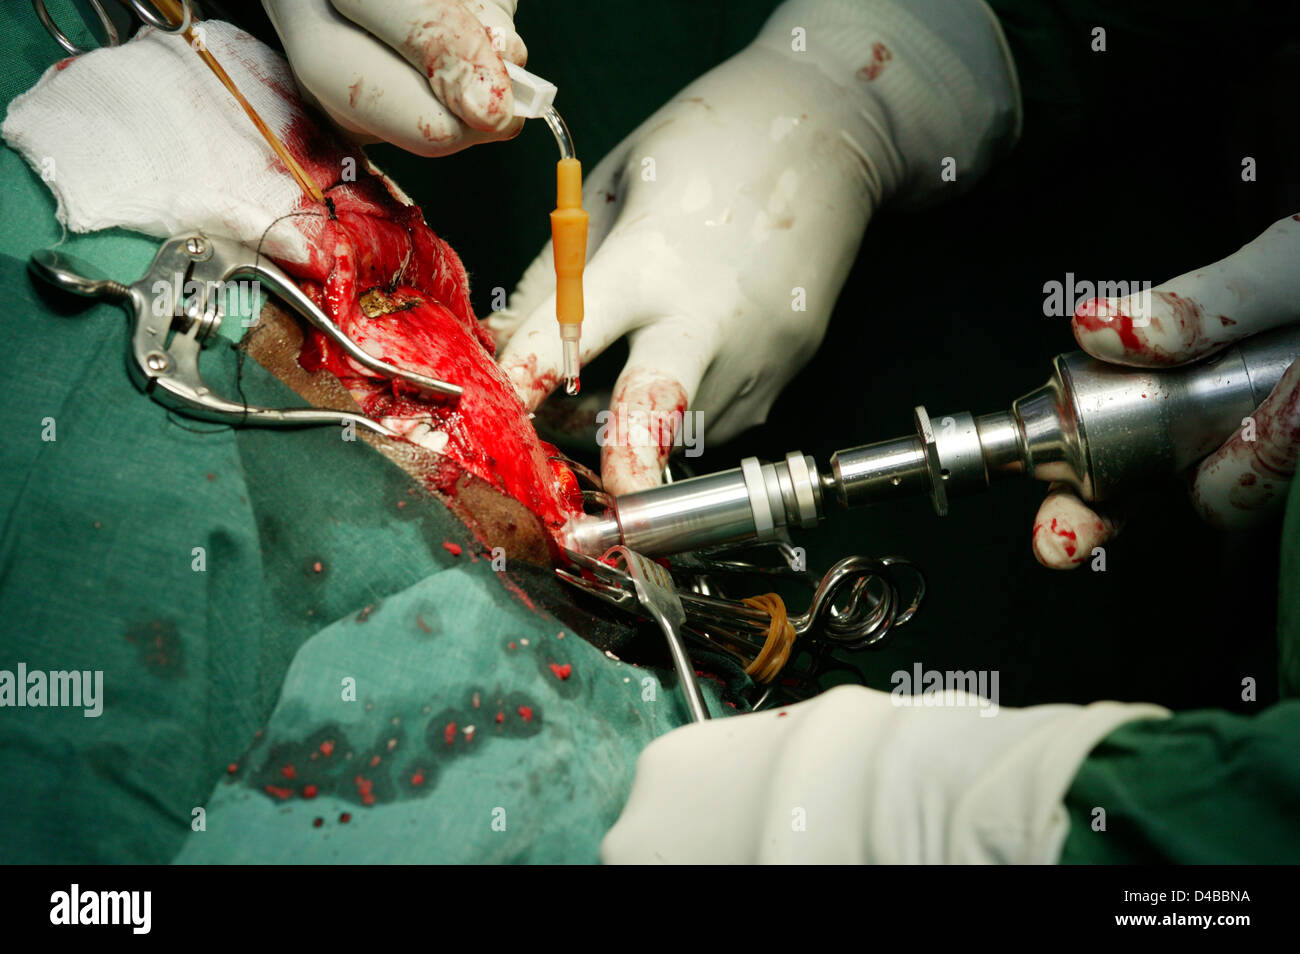 Une perceuse à vitesse élevée est utilisé pour couper un trou dans le crâne de sorte qu'un chirurgien peut accéder au cerveau au cours d'une opération neurochirurgicale. Banque D'Images